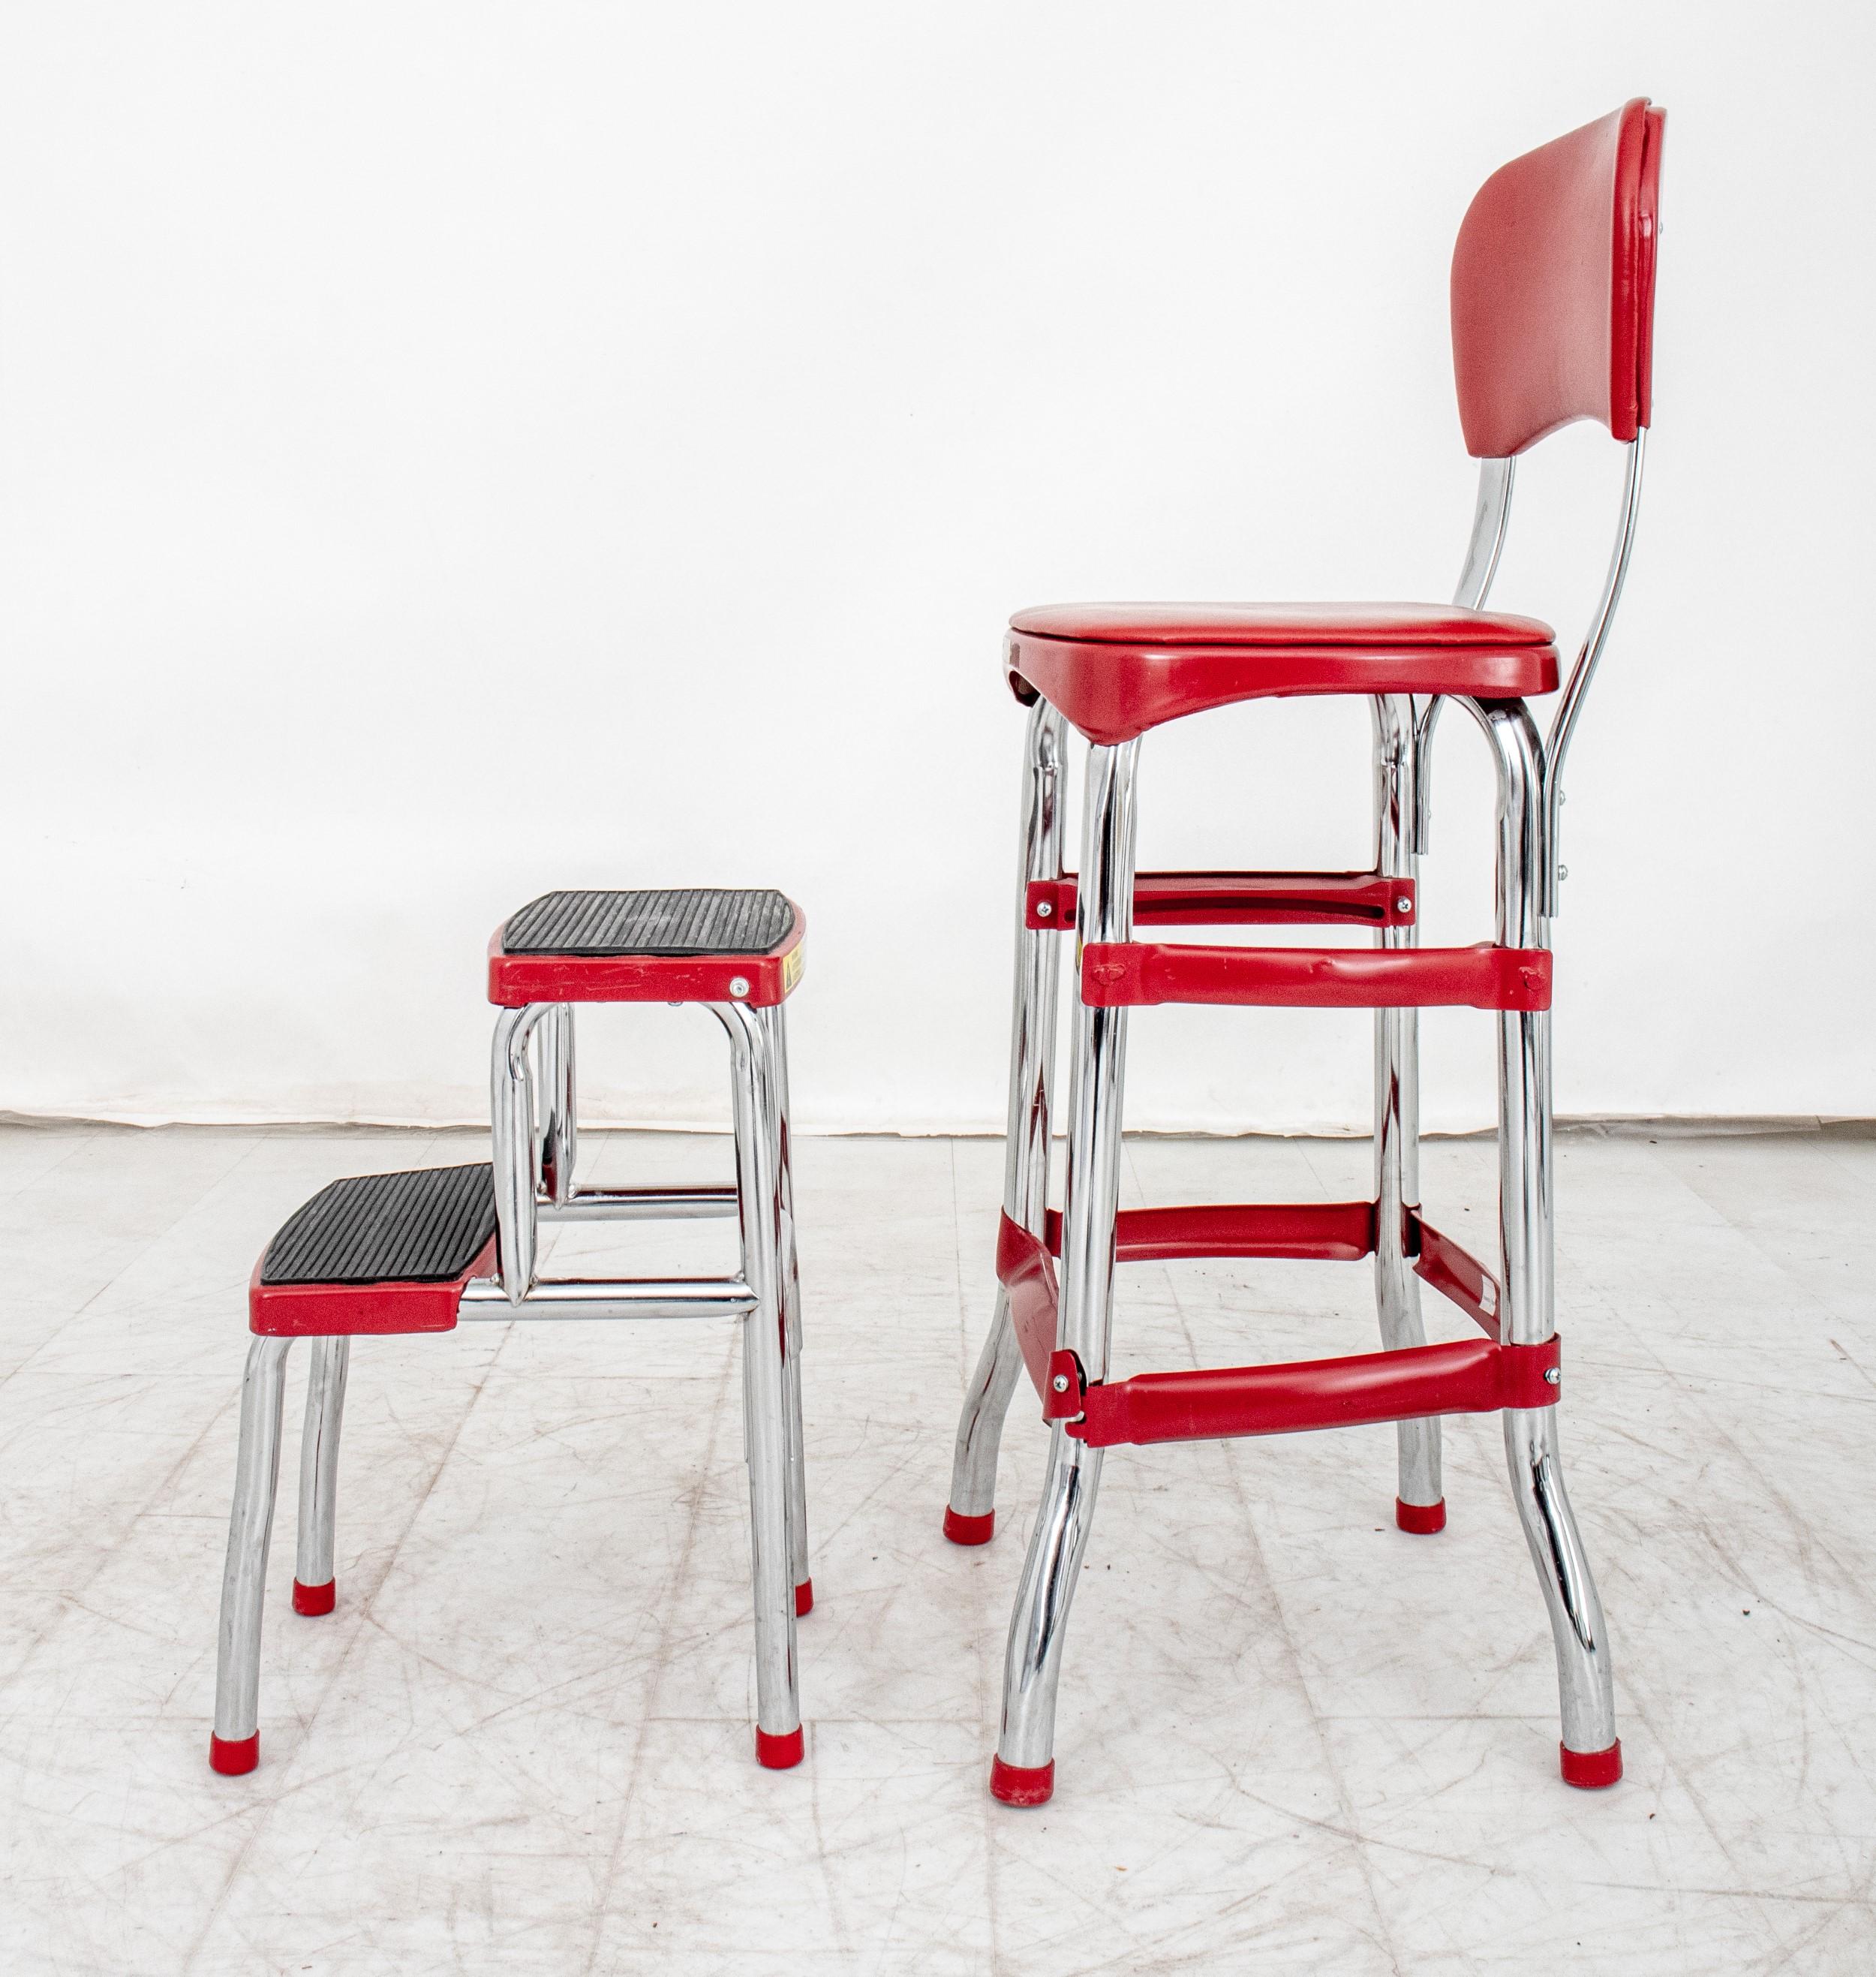 Cosco Retro Rot Küche Schritt Stuhl. Hier sind die Informationen:

Marke: Cosco
Stil: Retro
Farbe: Rot
Konstruktion MATERIAL: Verchromte Metallbeine
Merkmale:
Küche Schritt Stuhl Design
Auf der Rückseite mit einer Herstellermarke oder einem